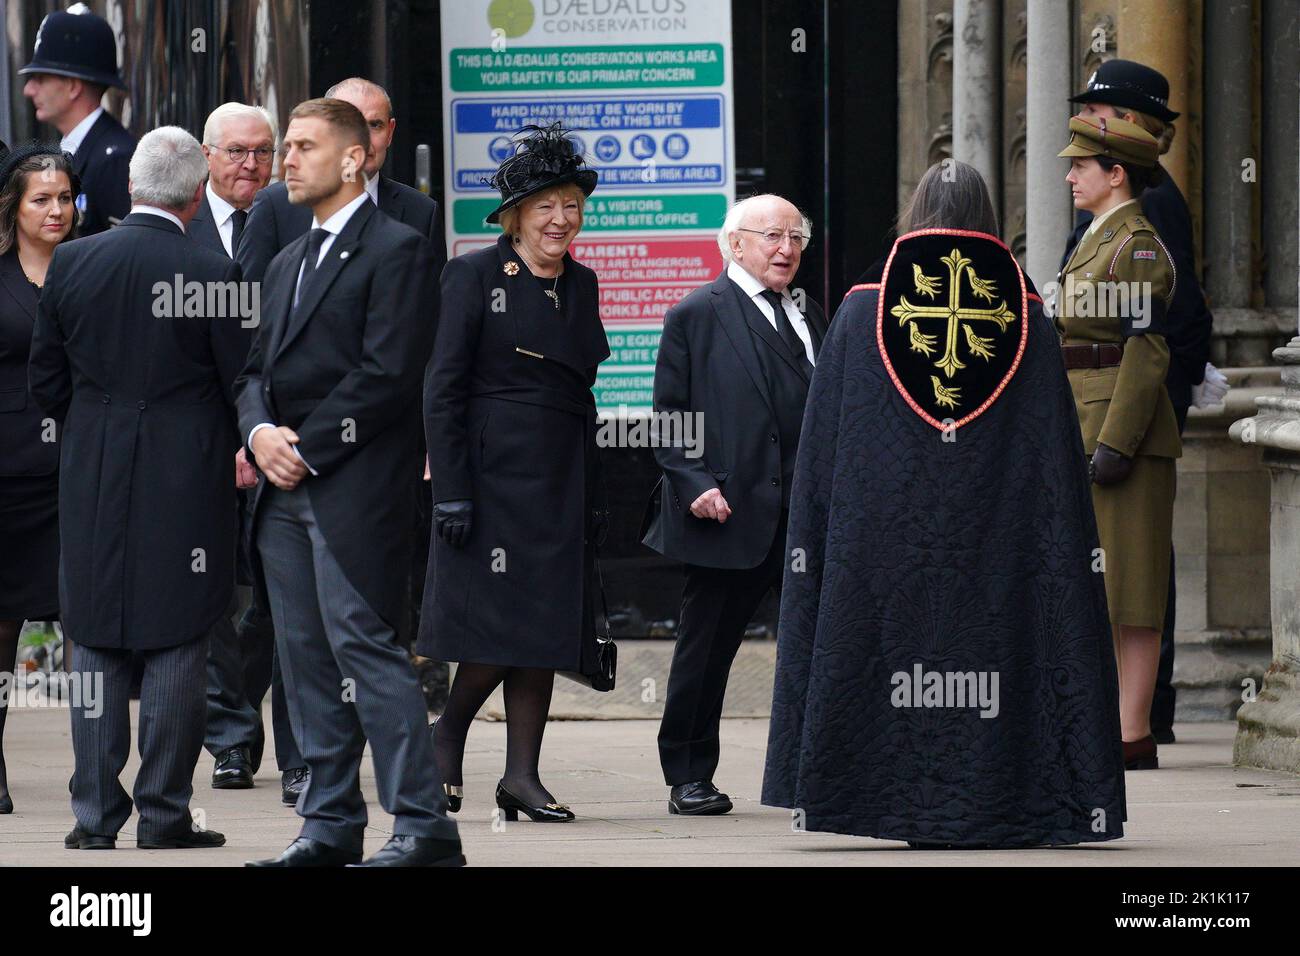 Le président irlandais Michael D Higgins et son épouse Sabina arrivent au funérailles d'État de la reine Elizabeth II, qui s'est tenu à l'abbaye de Westminster, à Londres. Date de la photo: Lundi 19 septembre 2022. Banque D'Images